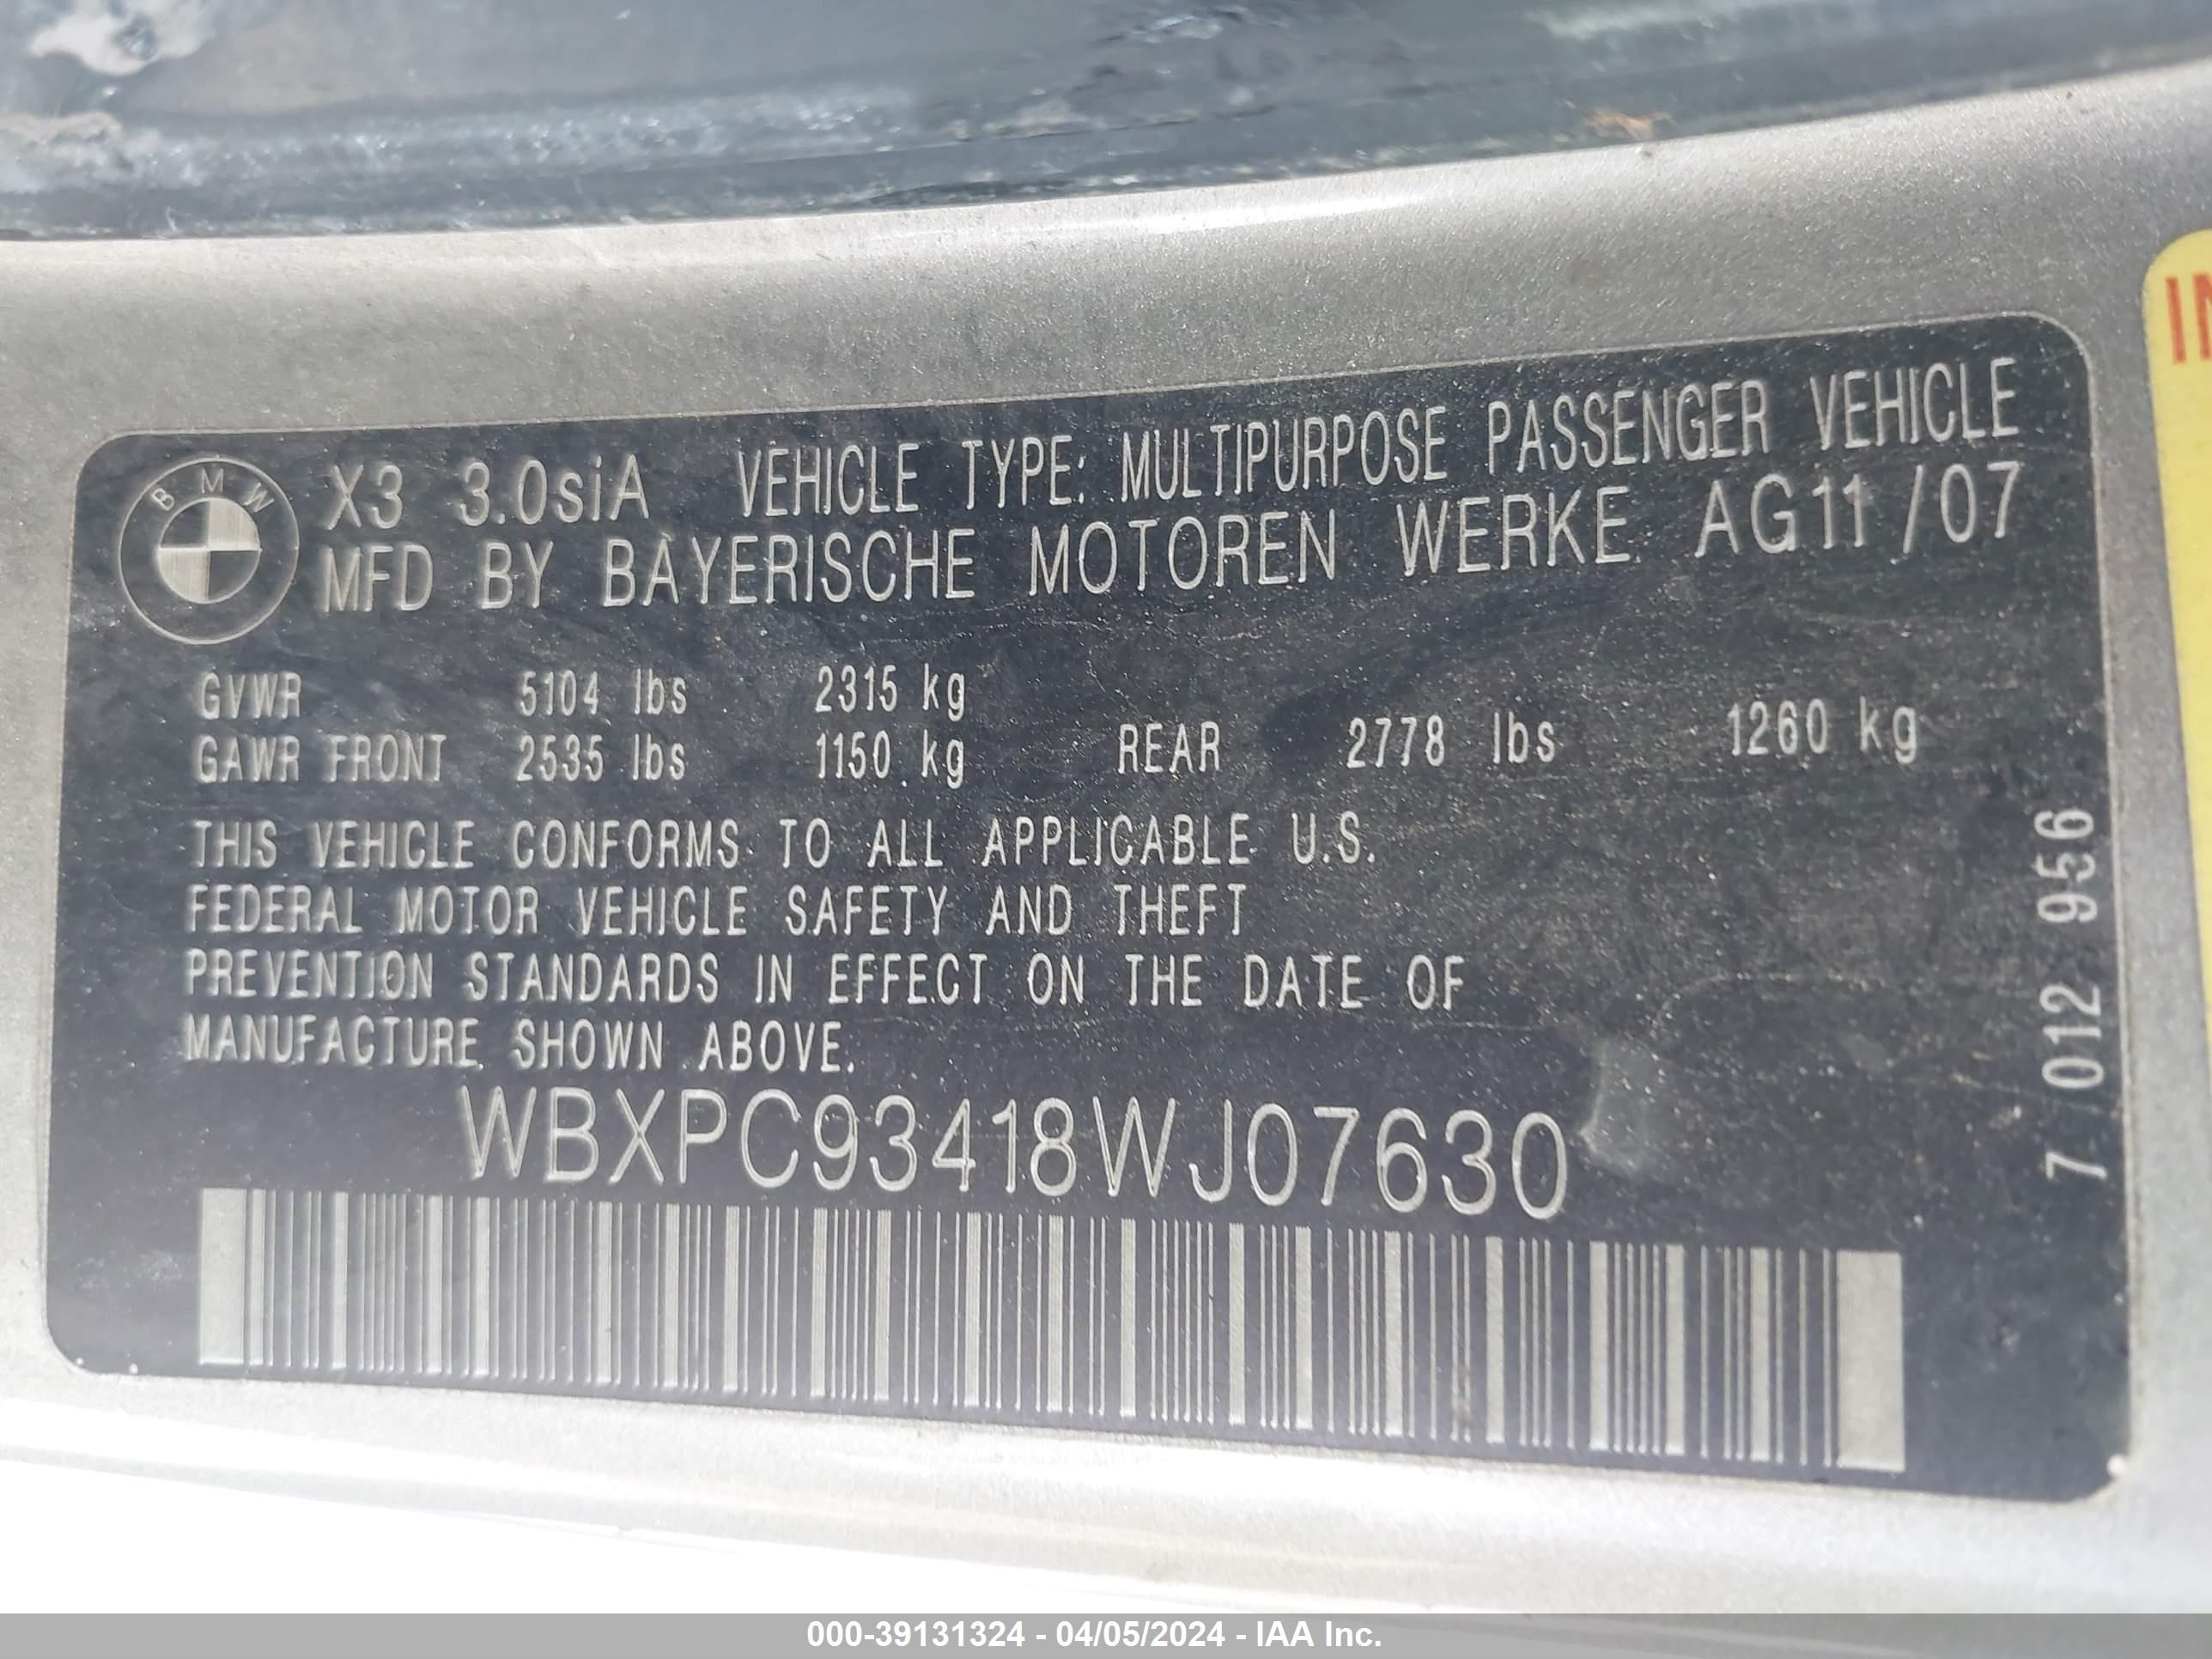 WBXPC93418WJ07630  - BMW X3  2008 IMG - 8